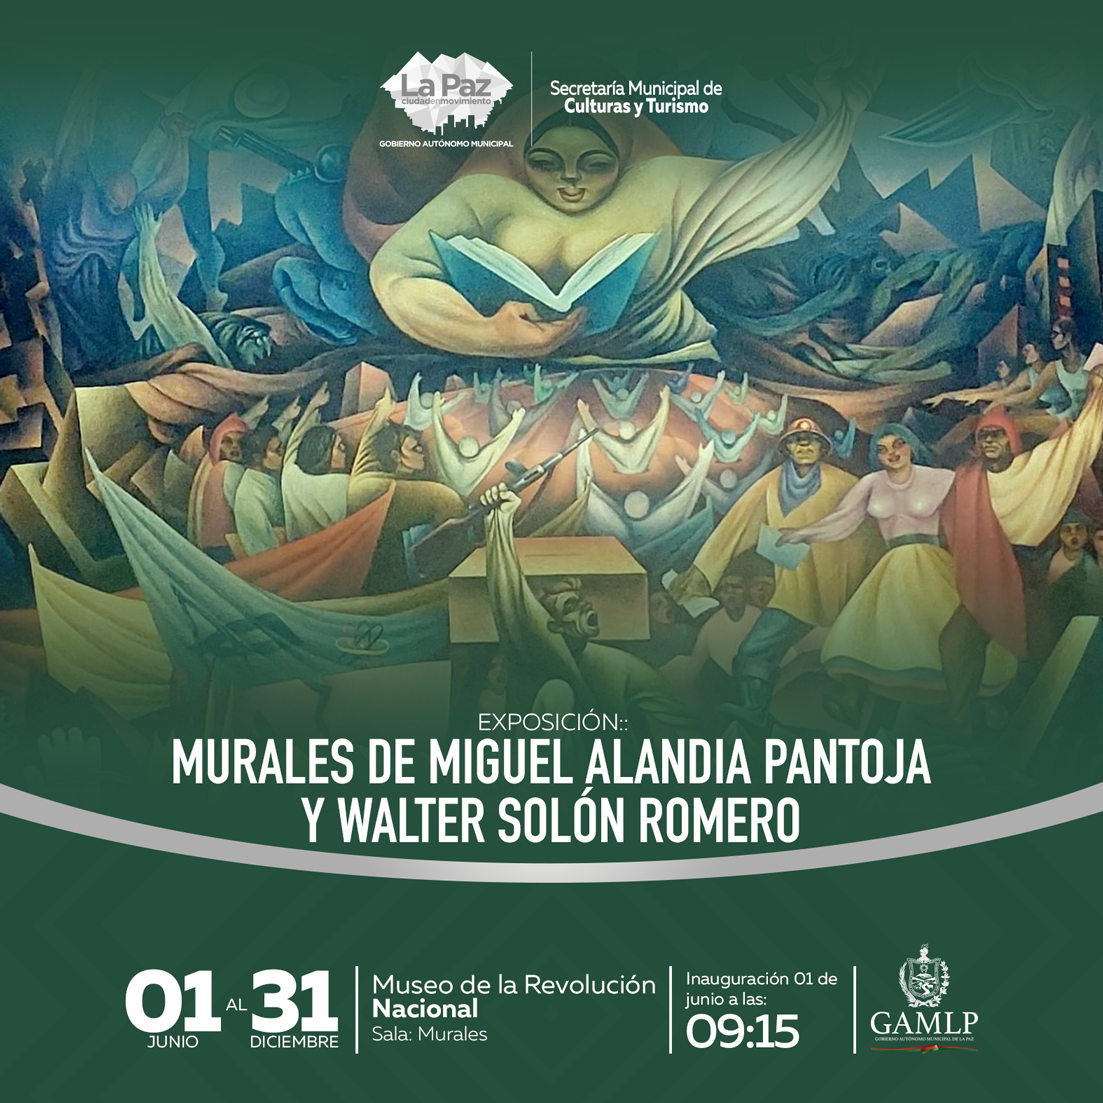 EXPOSICIÓN: “MURALES DE MIGUEL ALANDIA PANTOJA Y WALTER SOLÓN ROMERO”